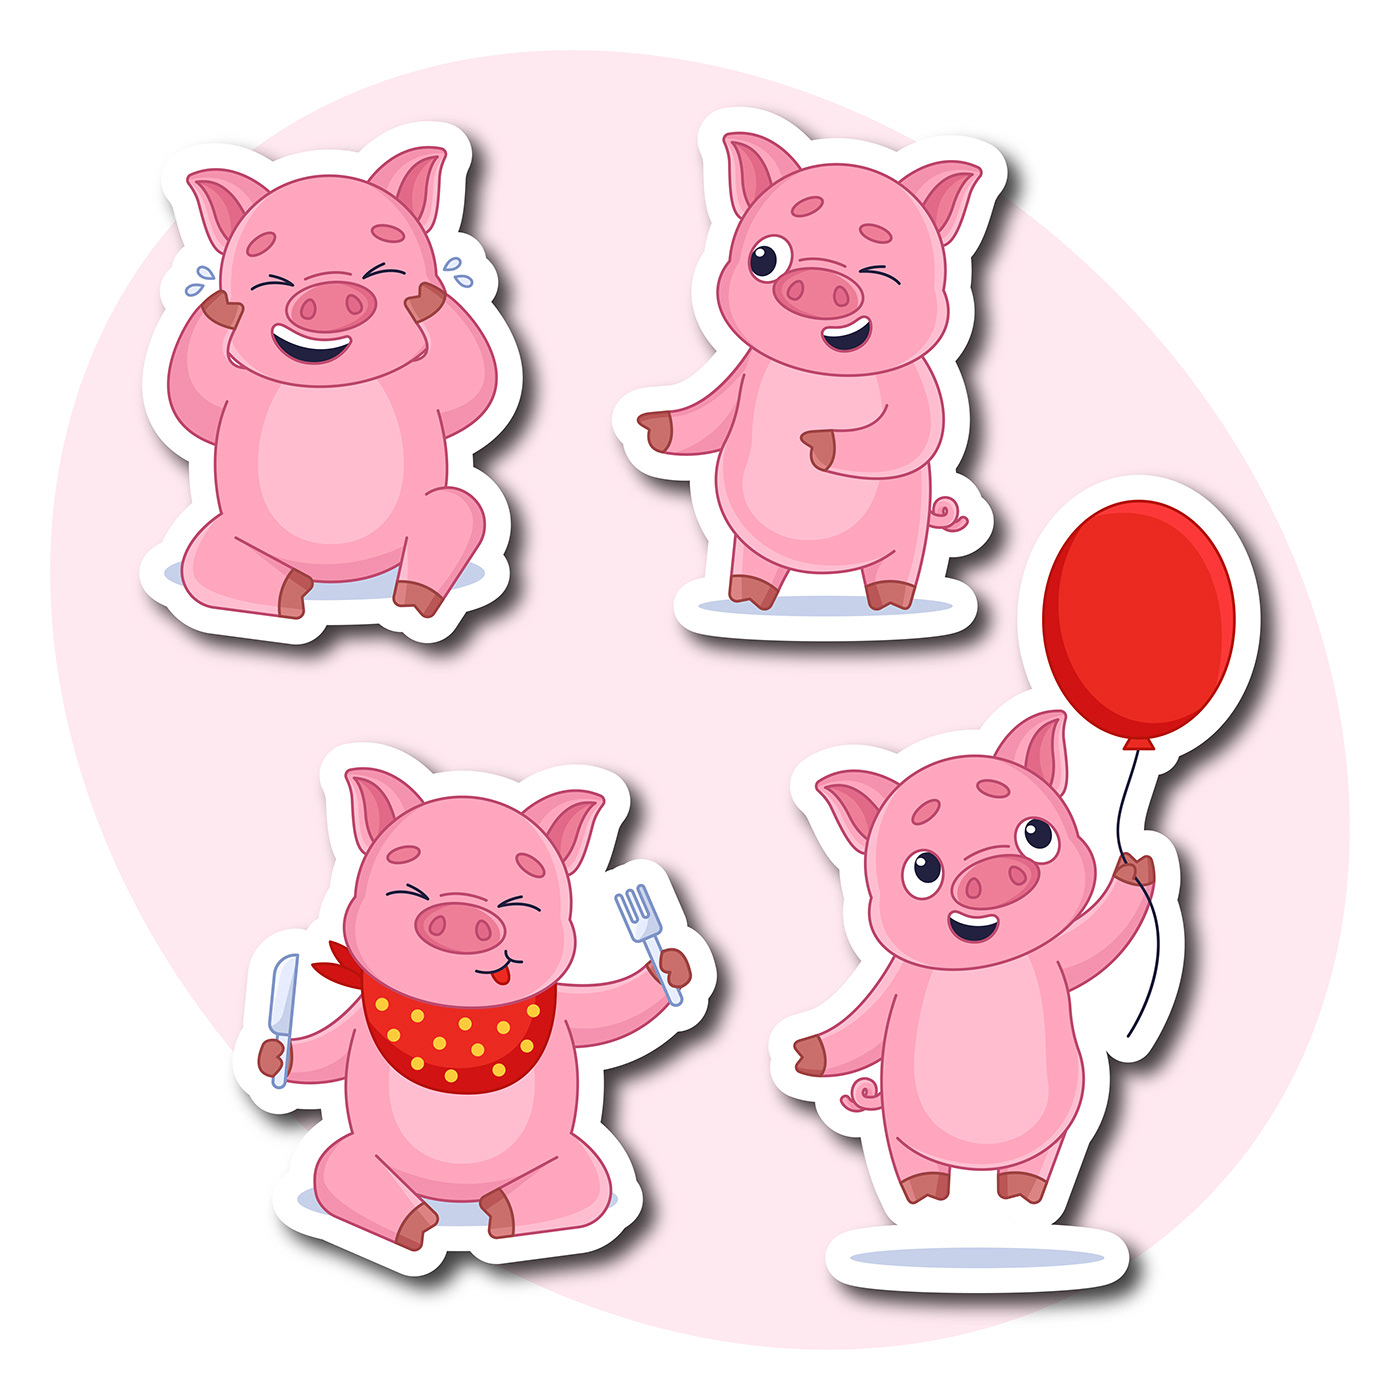 adobe illustrator animal cartoon Character design  cute pig sticker vector vector art Vector Illustration